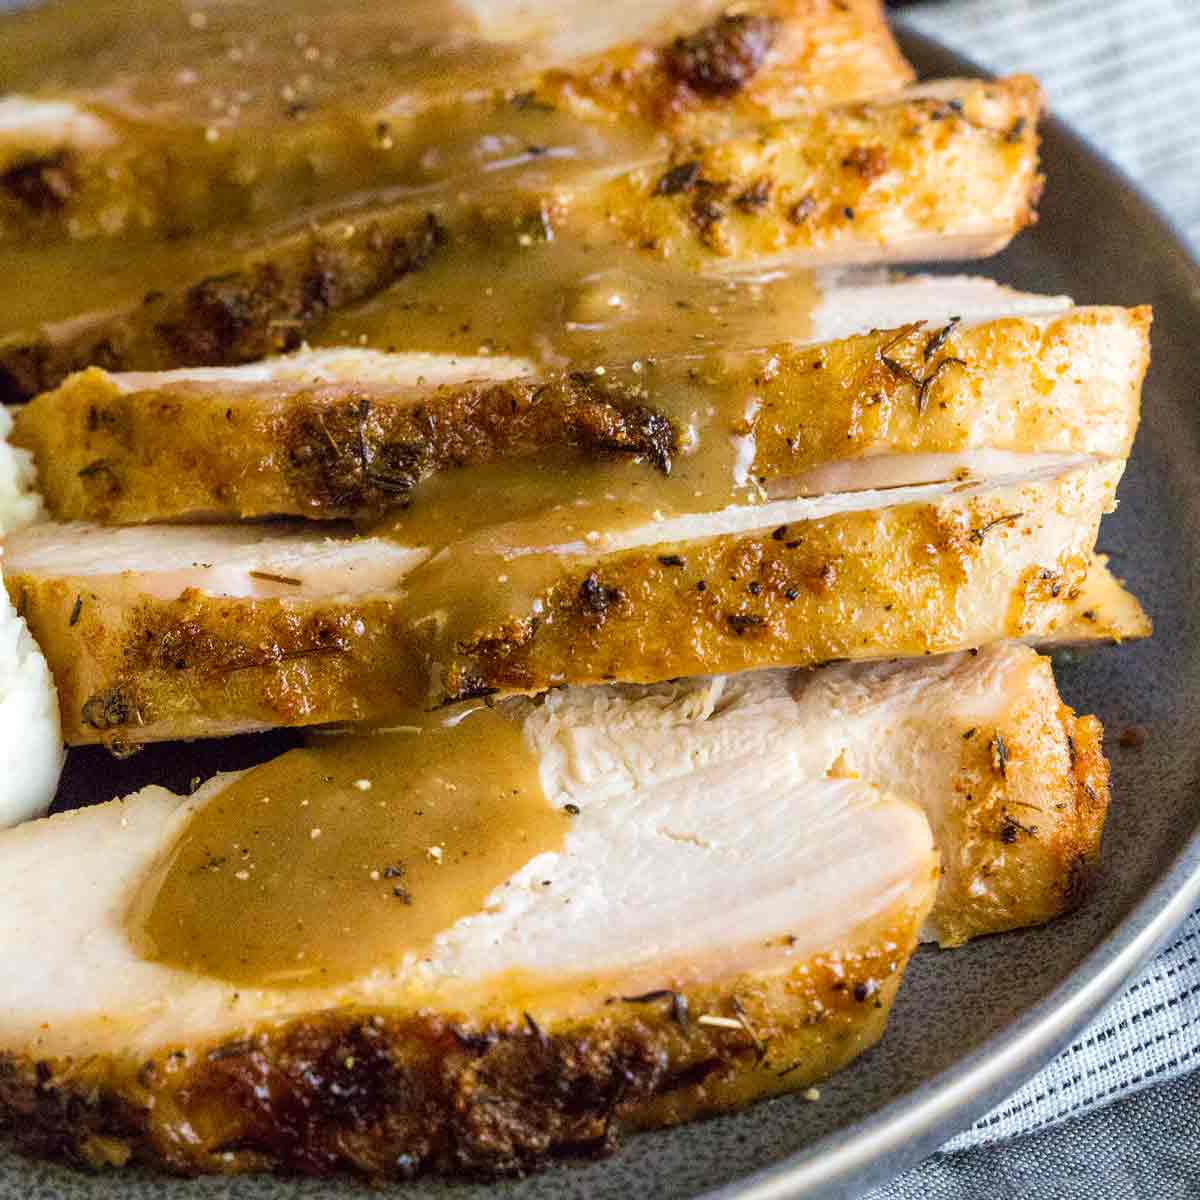 Turkey breast london broil recipes